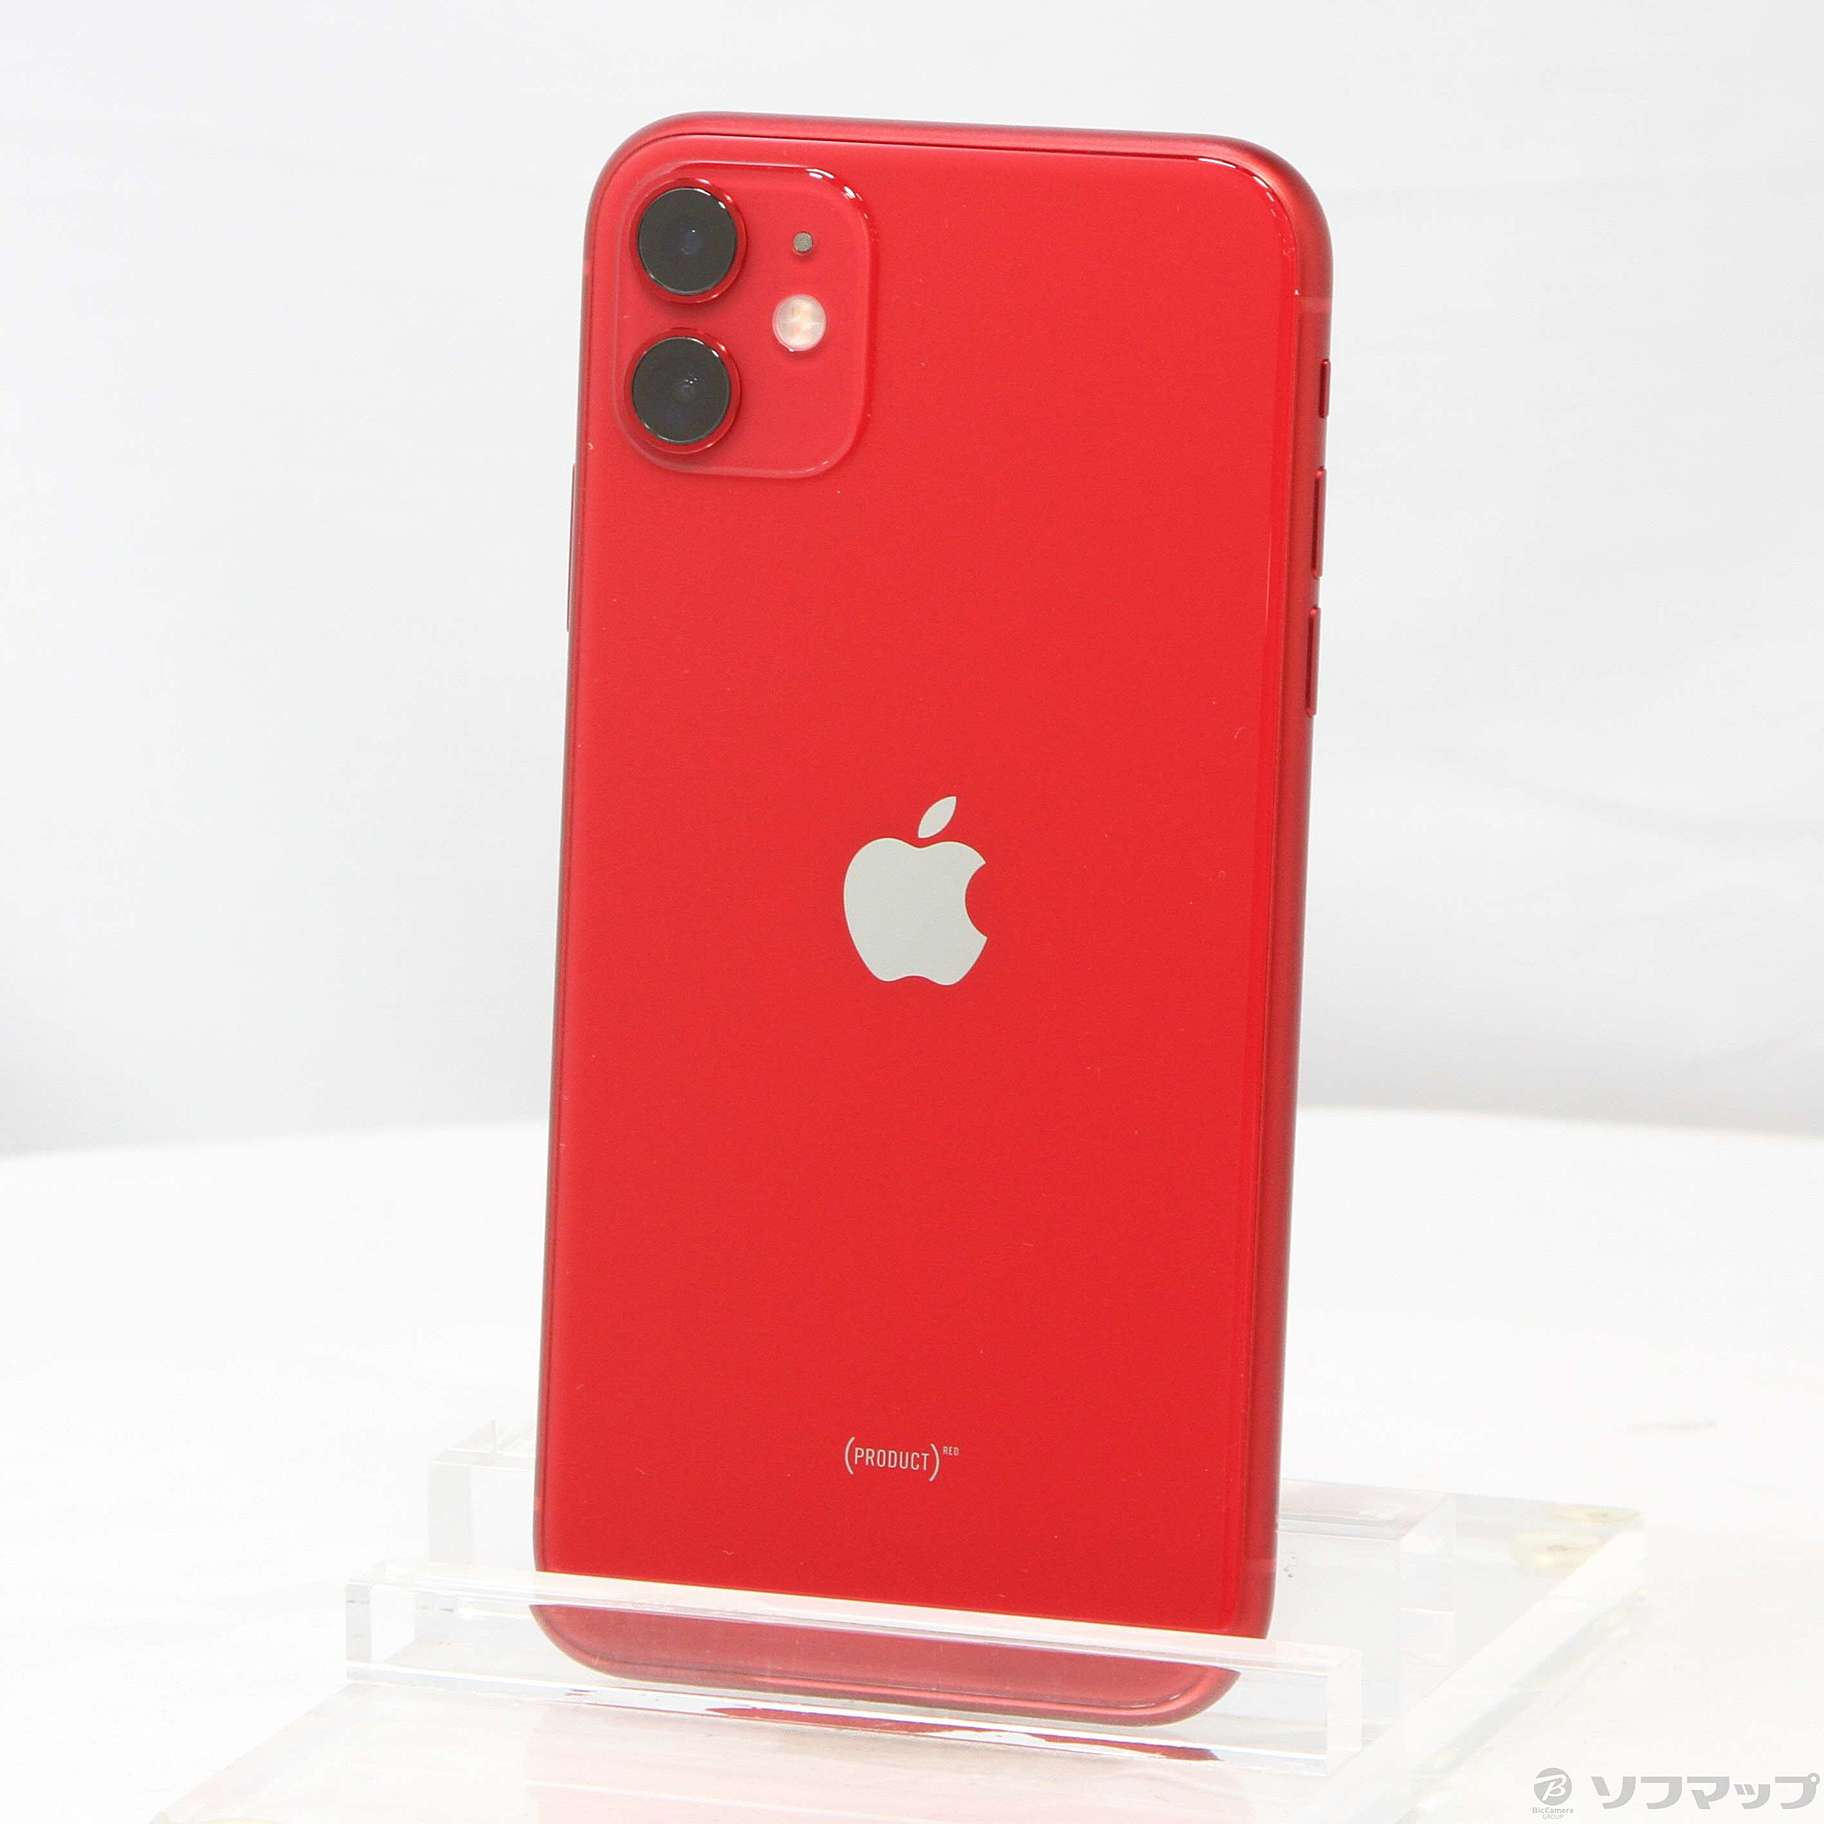 全3色/黒/赤/ベージュ Apple iPhone11 64GB レッド MWLV2J/A